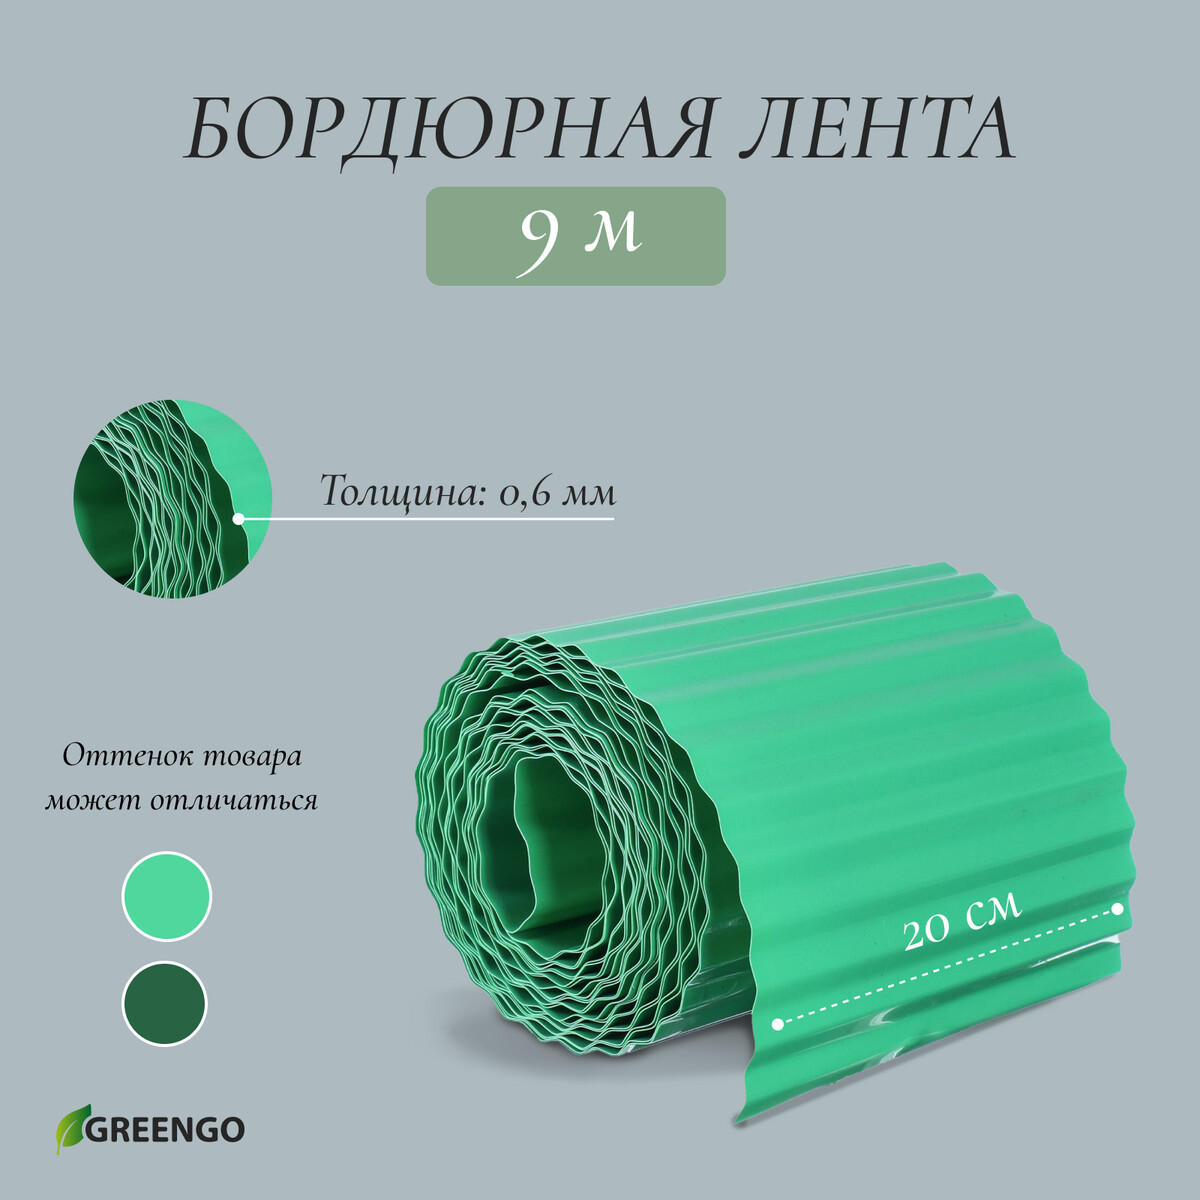 Лента бордюрная, 0.2 × 9 м, толщина 0.6 мм, пластиковая, гофра, зеленая, greengo лента бордюрная 0 15 × 9 м толщина 0 6 мм пластиковая гофра зеленая greengo